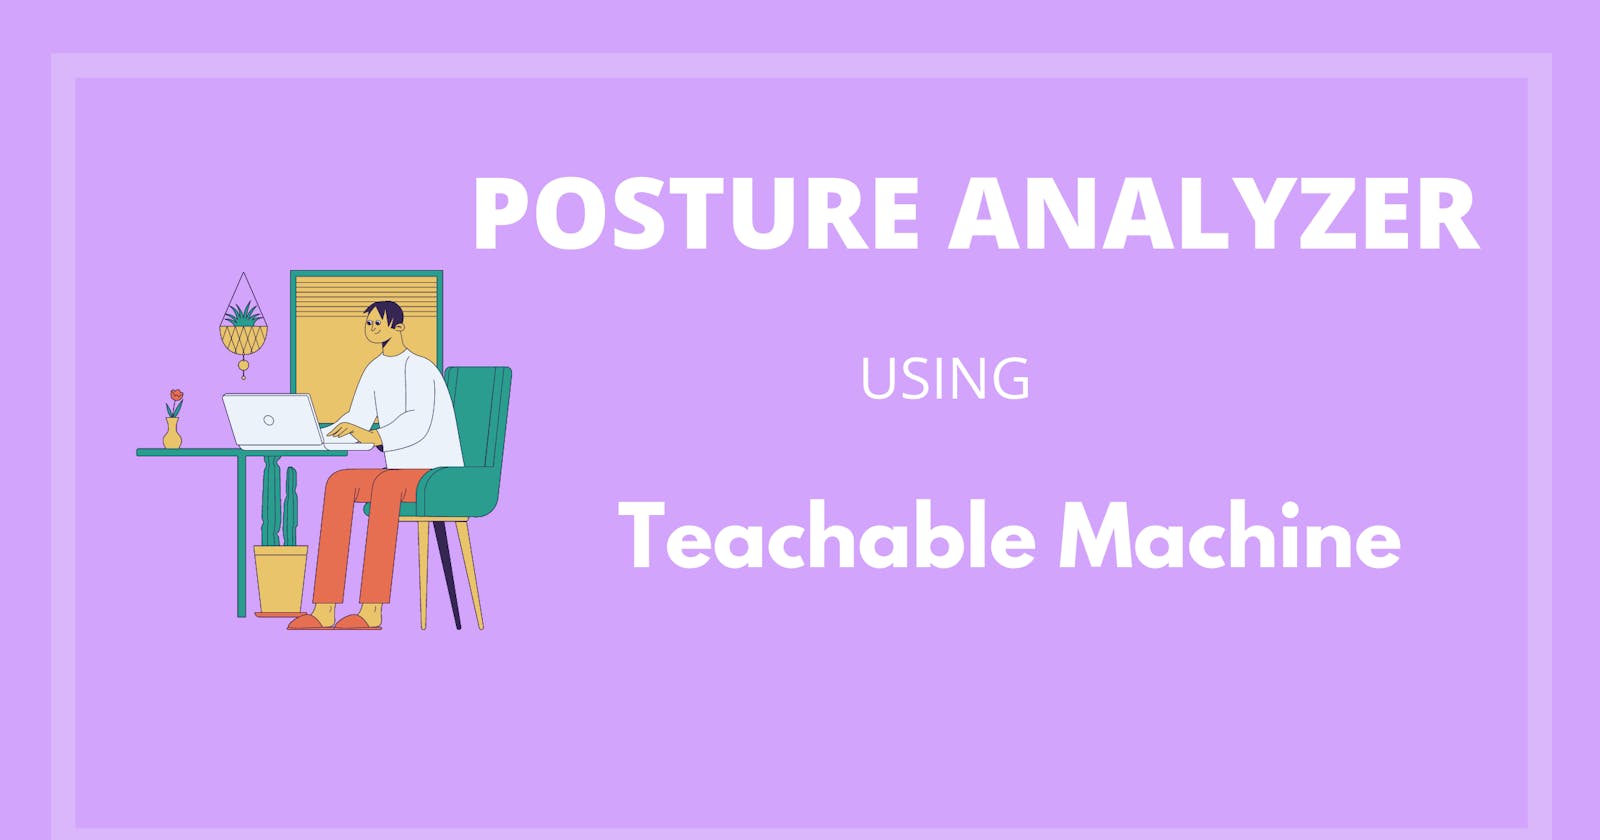 Posture Analyzer using Teachable Machine